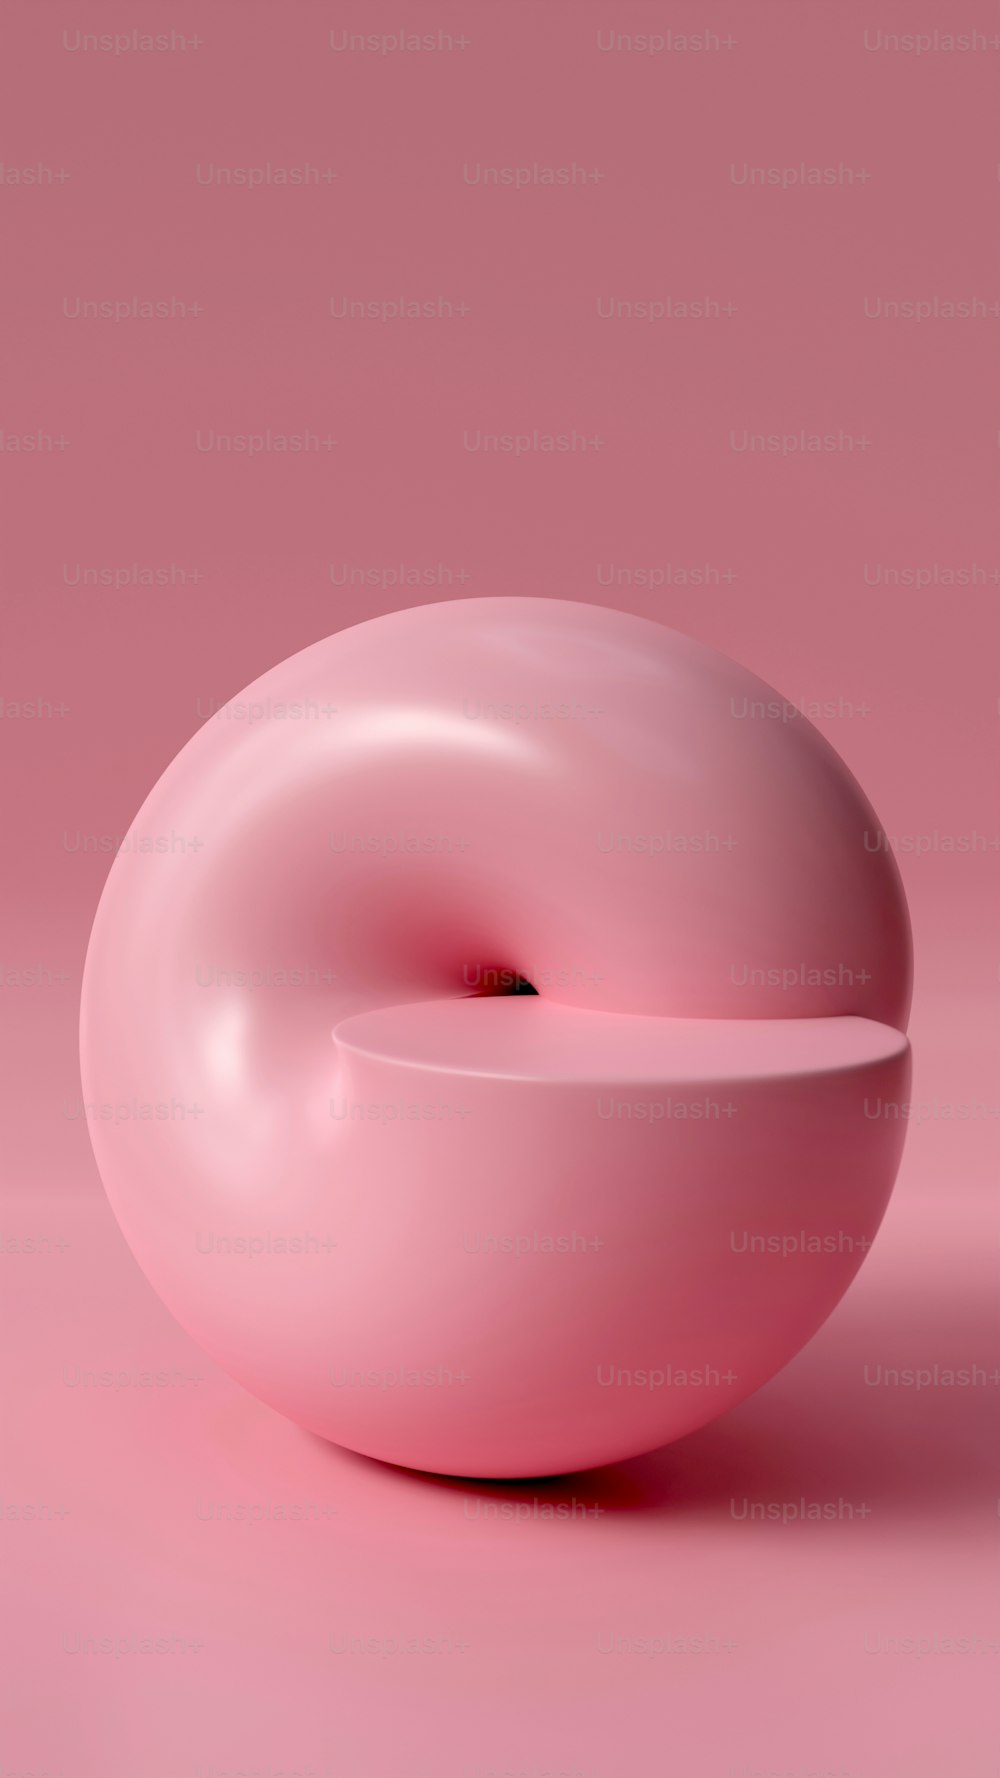 Una rosquilla colocada encima de una superficie rosa